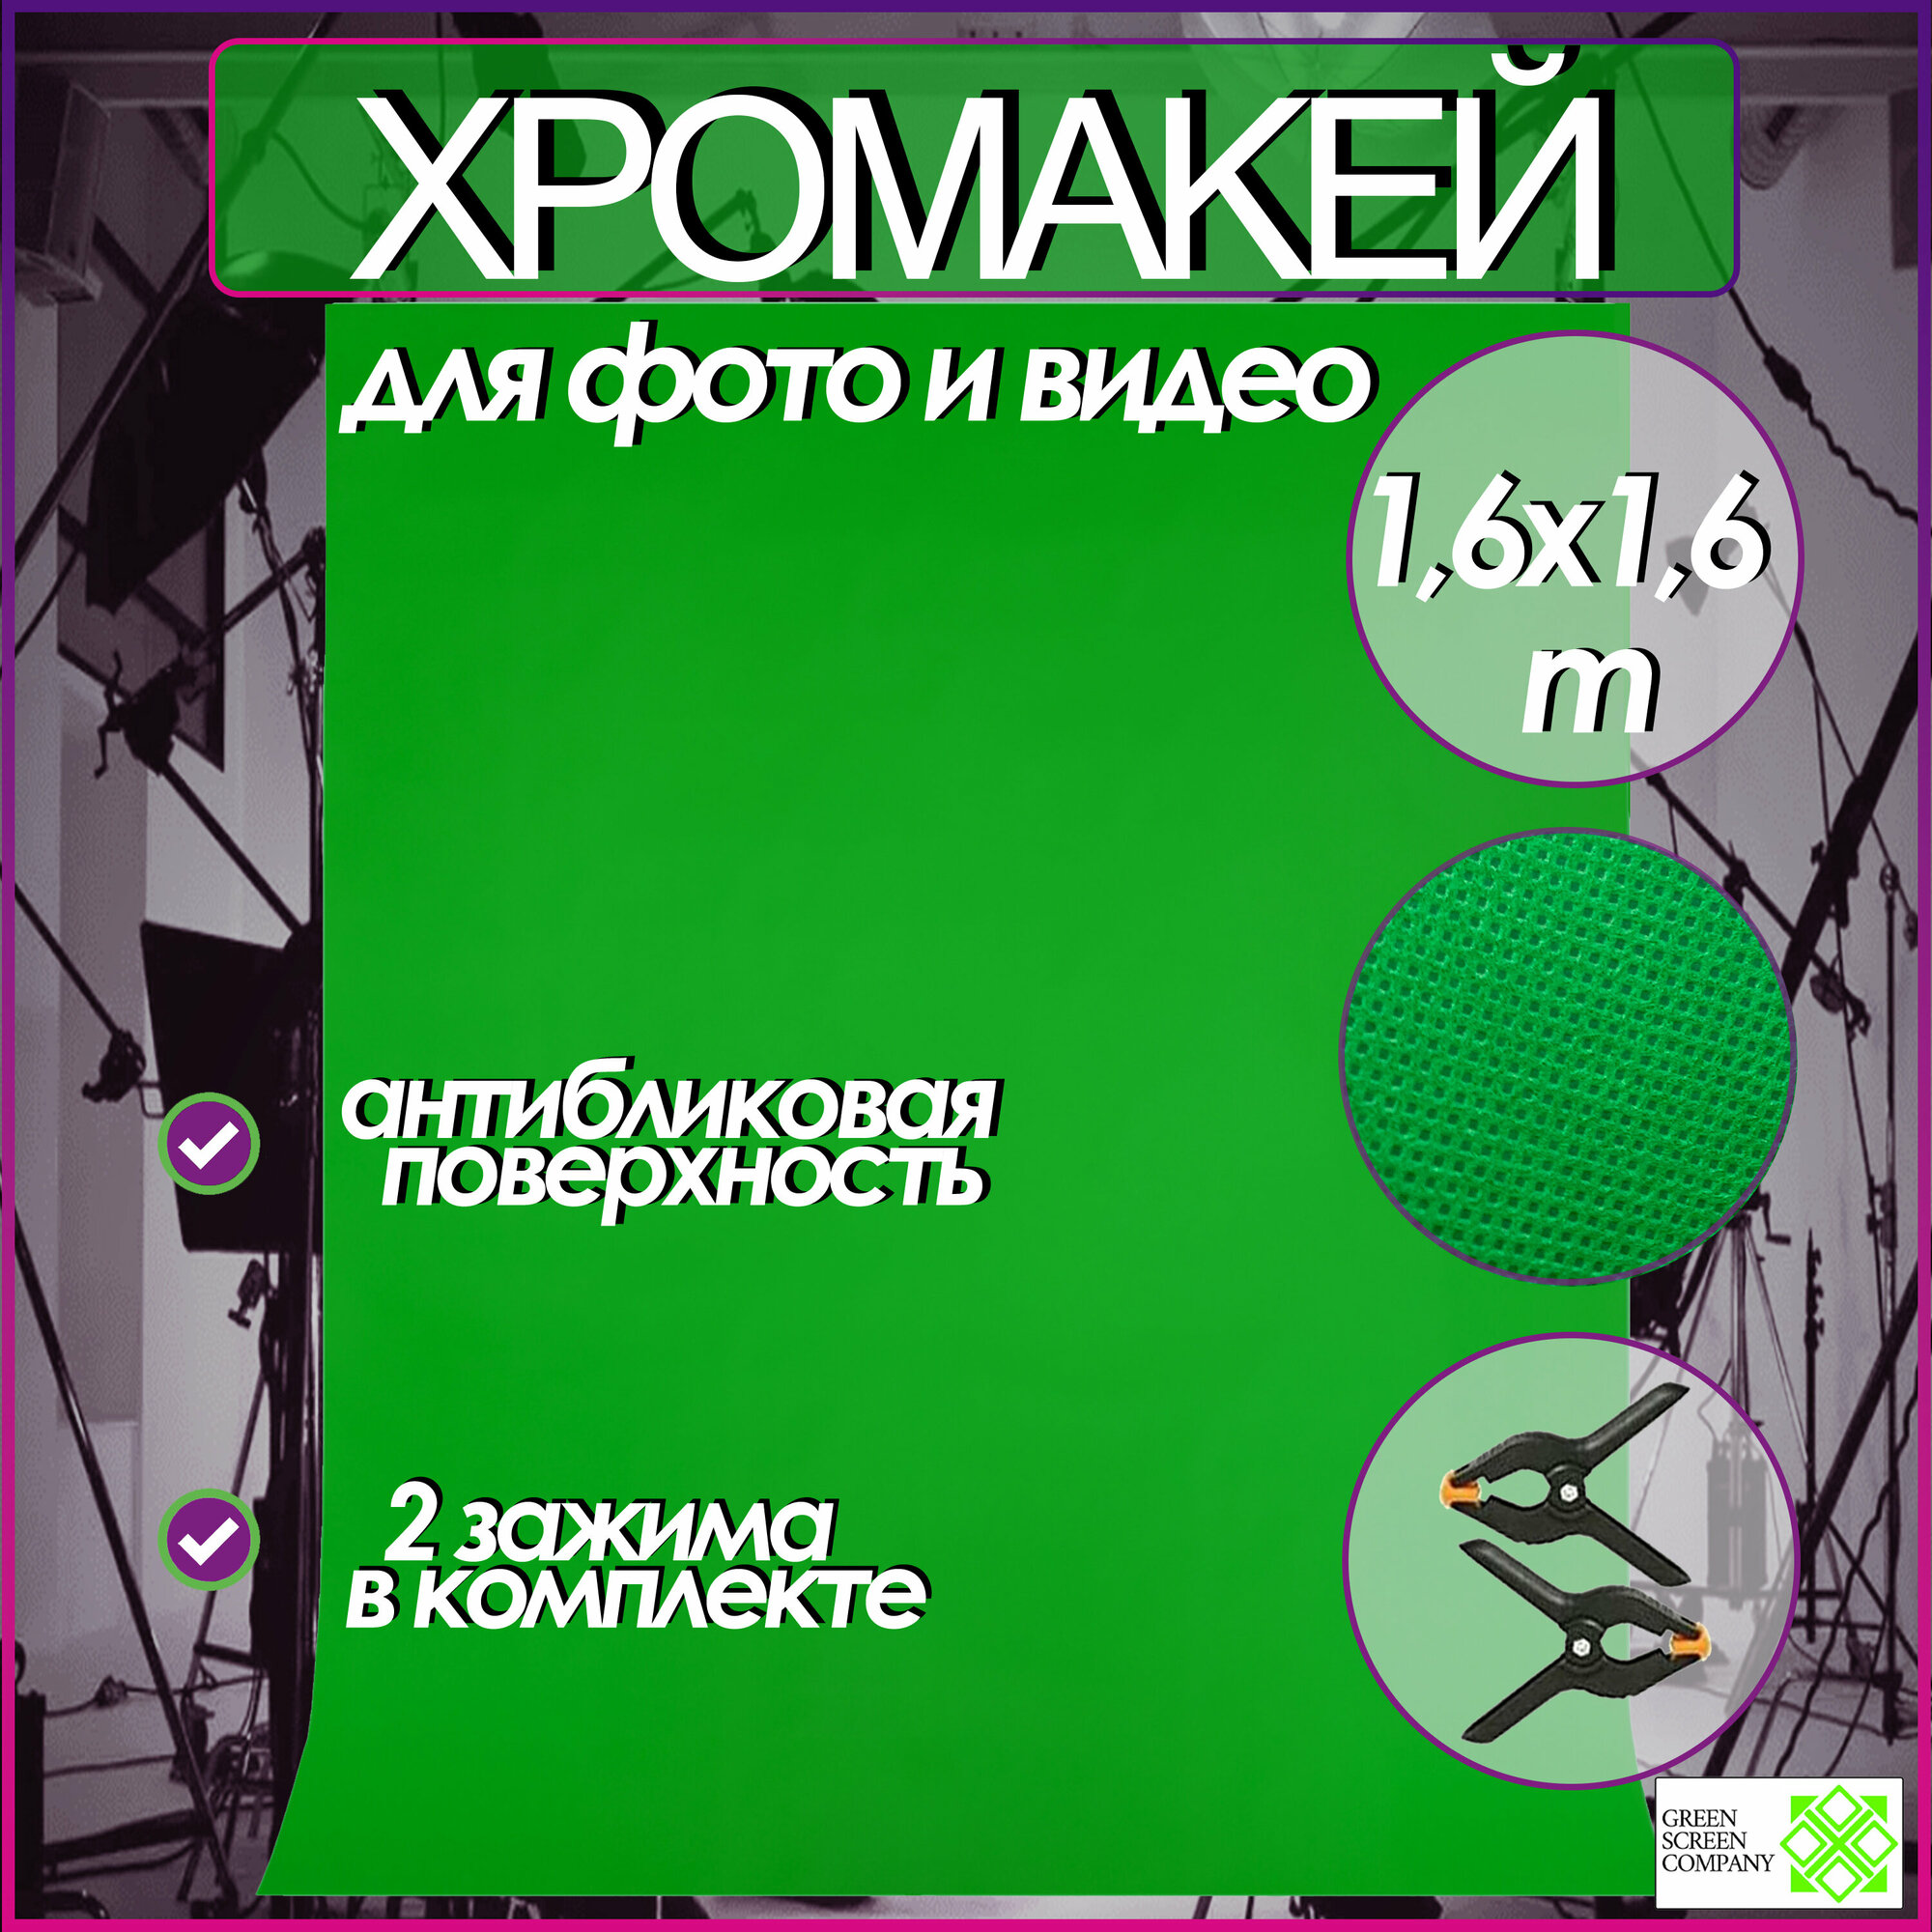 Хромакей зелёный 1,6х1,6m. фон для фото и видео съёмки / Chromakey GSC